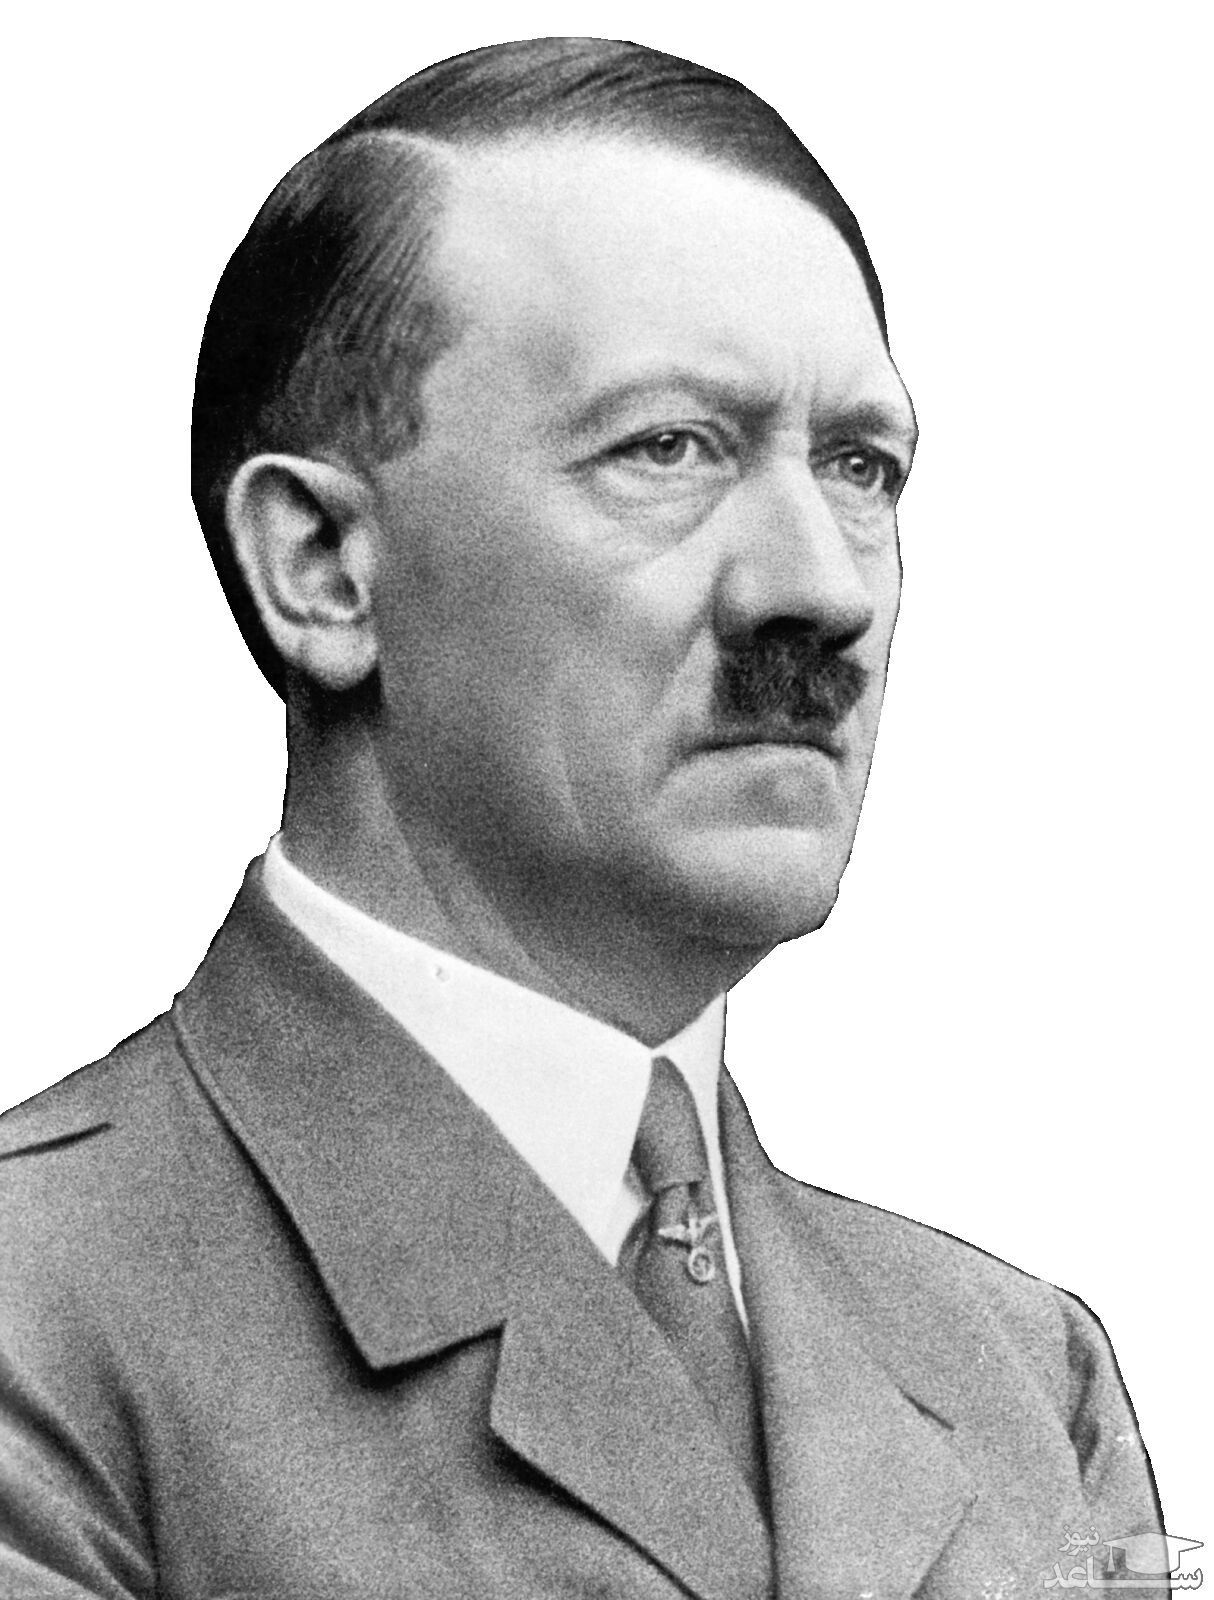 زندگینامه هيتلر سیاستمدار آلمانی